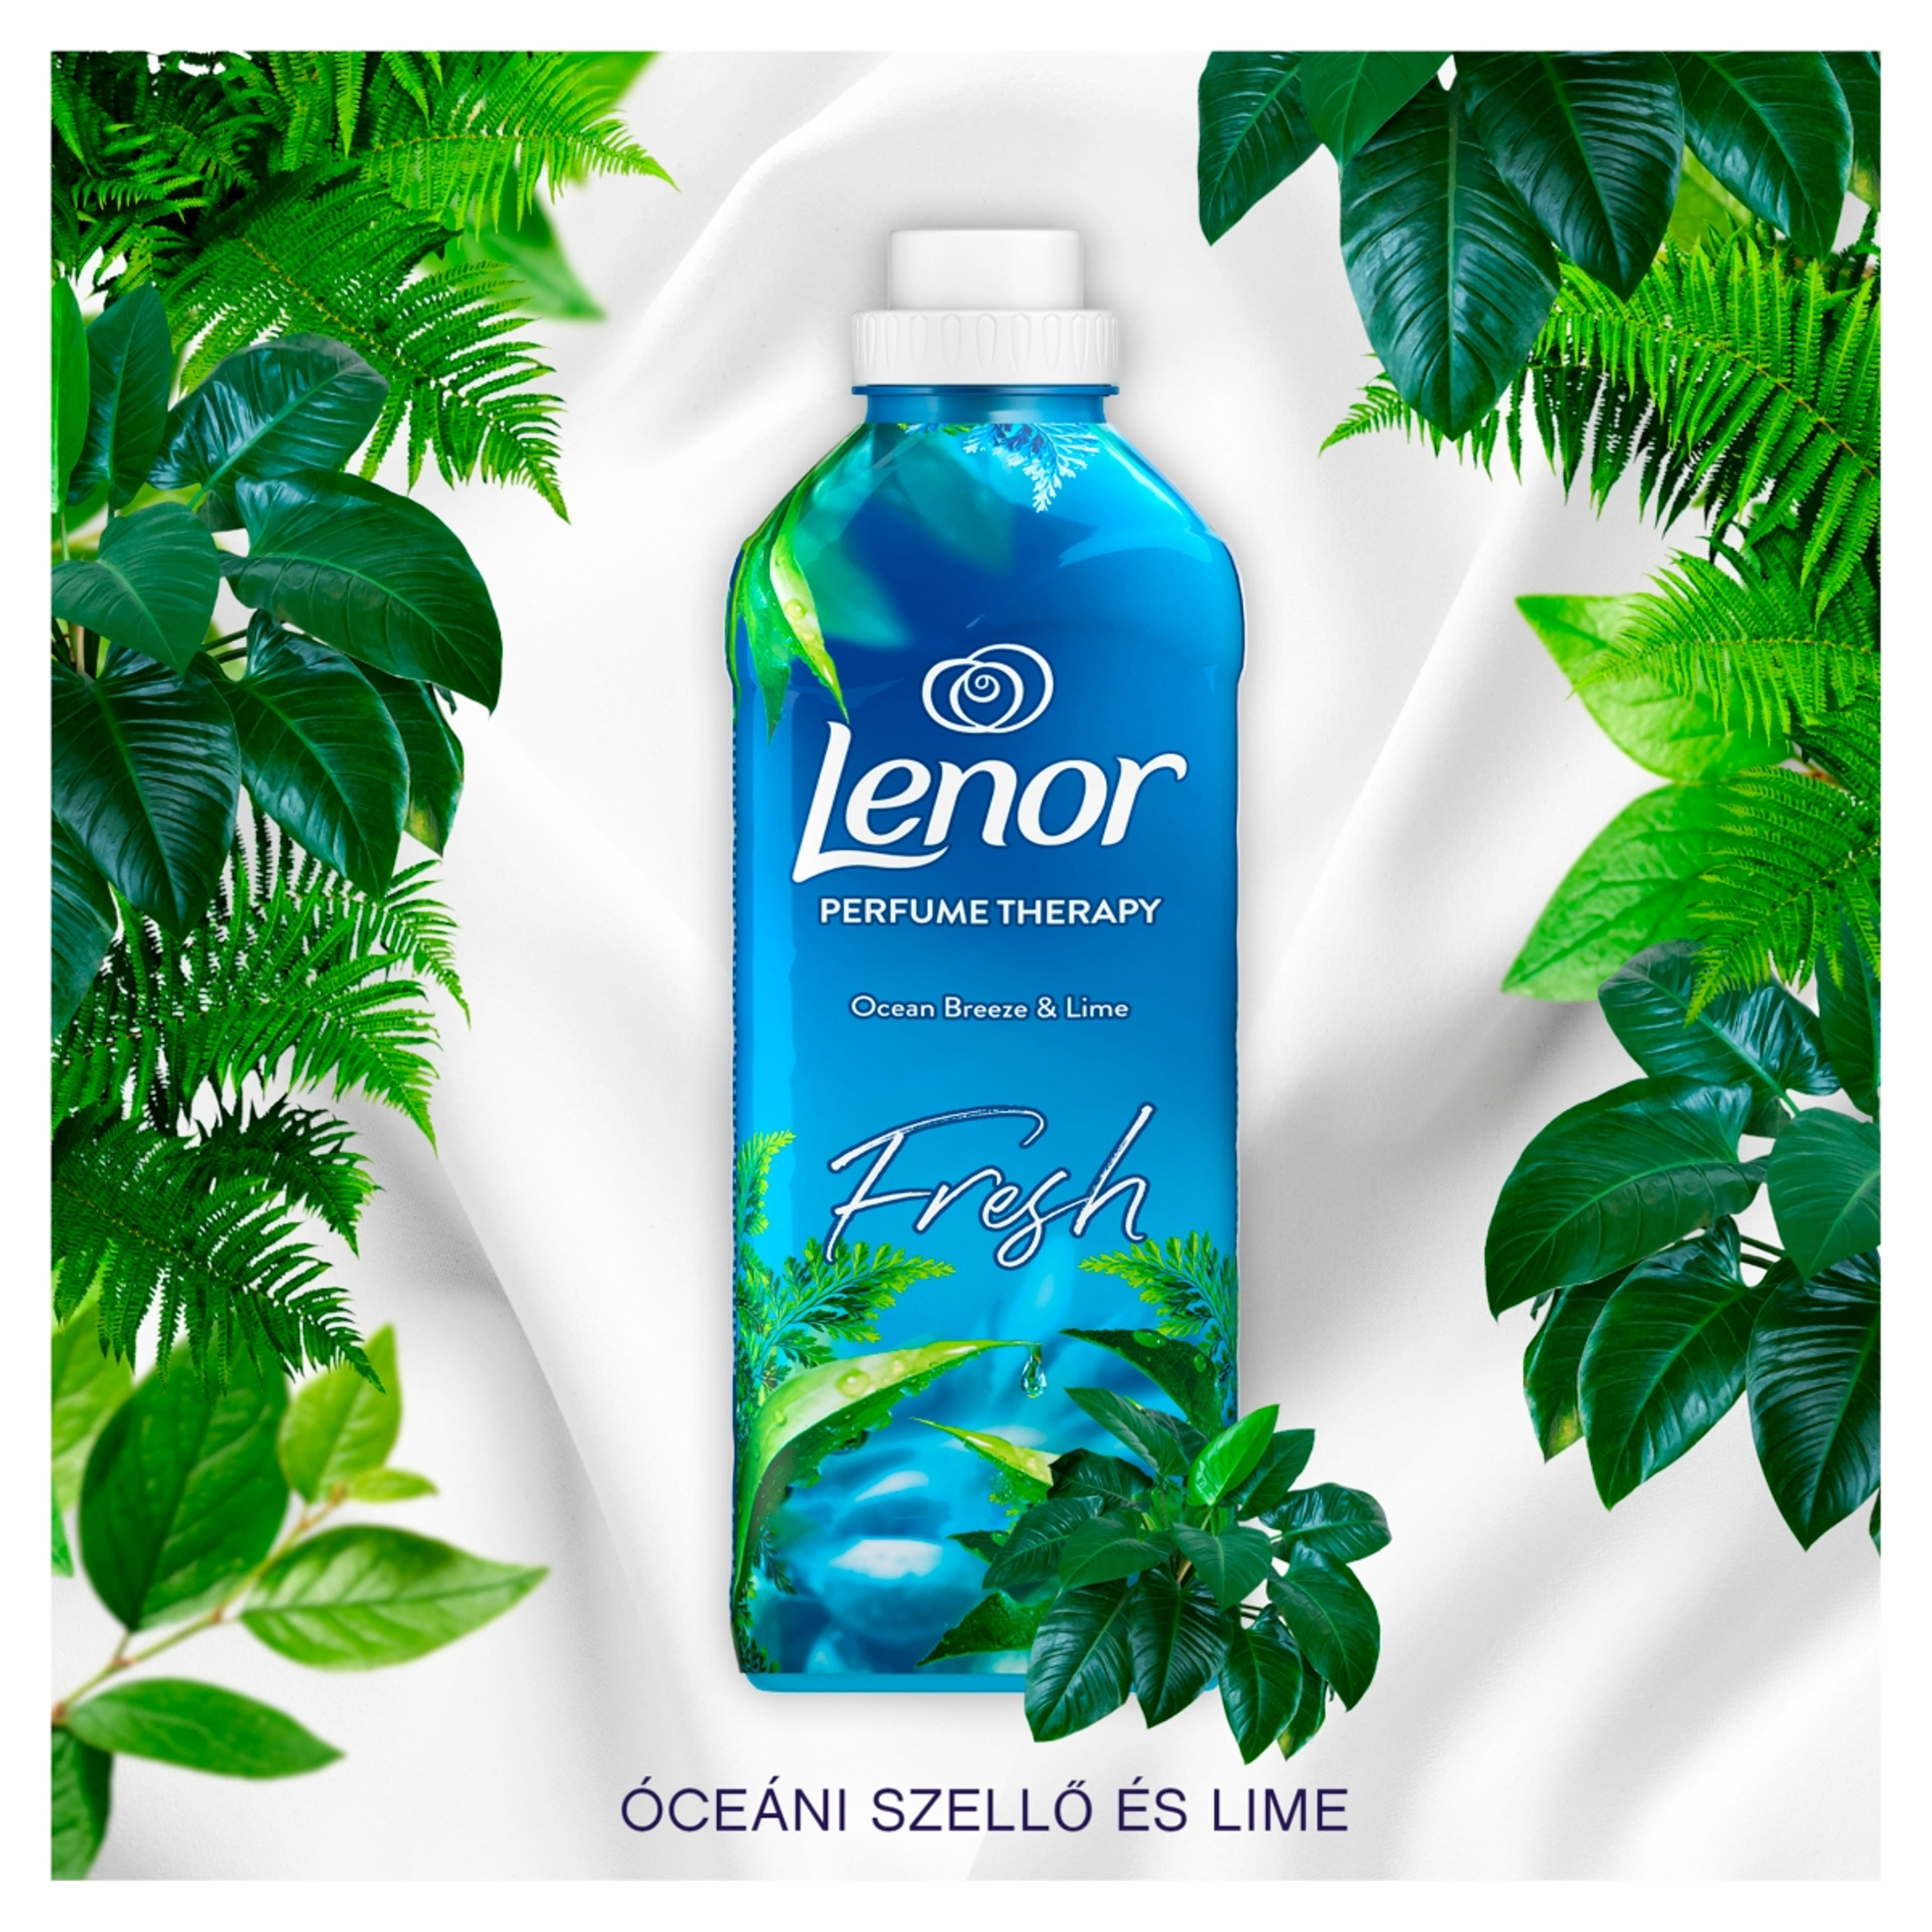 Lenor Ocean Breeze & Lime öblítő 96 mosáshoz duo - 1200 ml-2